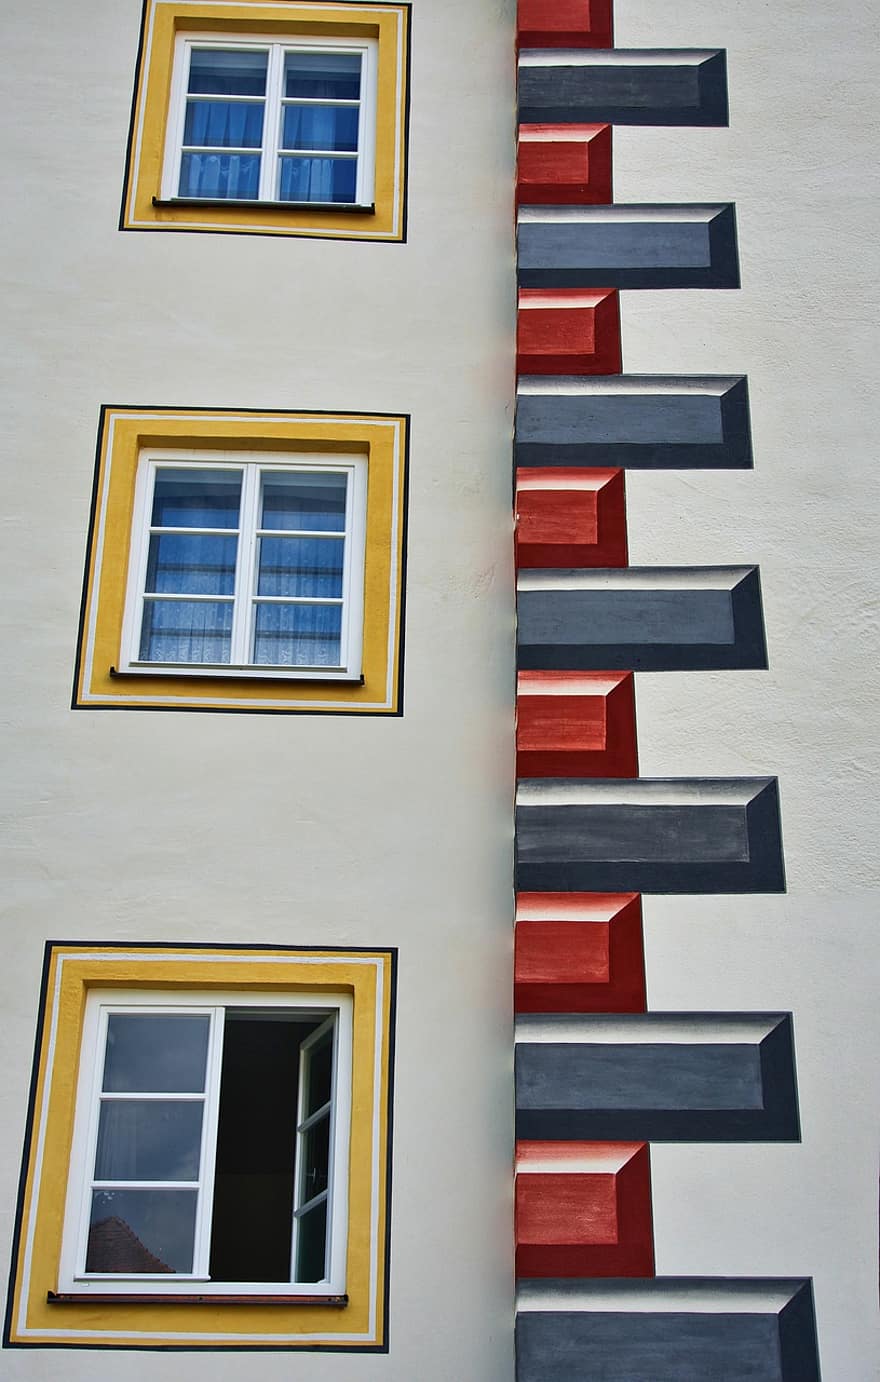 bangunan, Arsitektur, pola, dinding, windows, blok, simetri